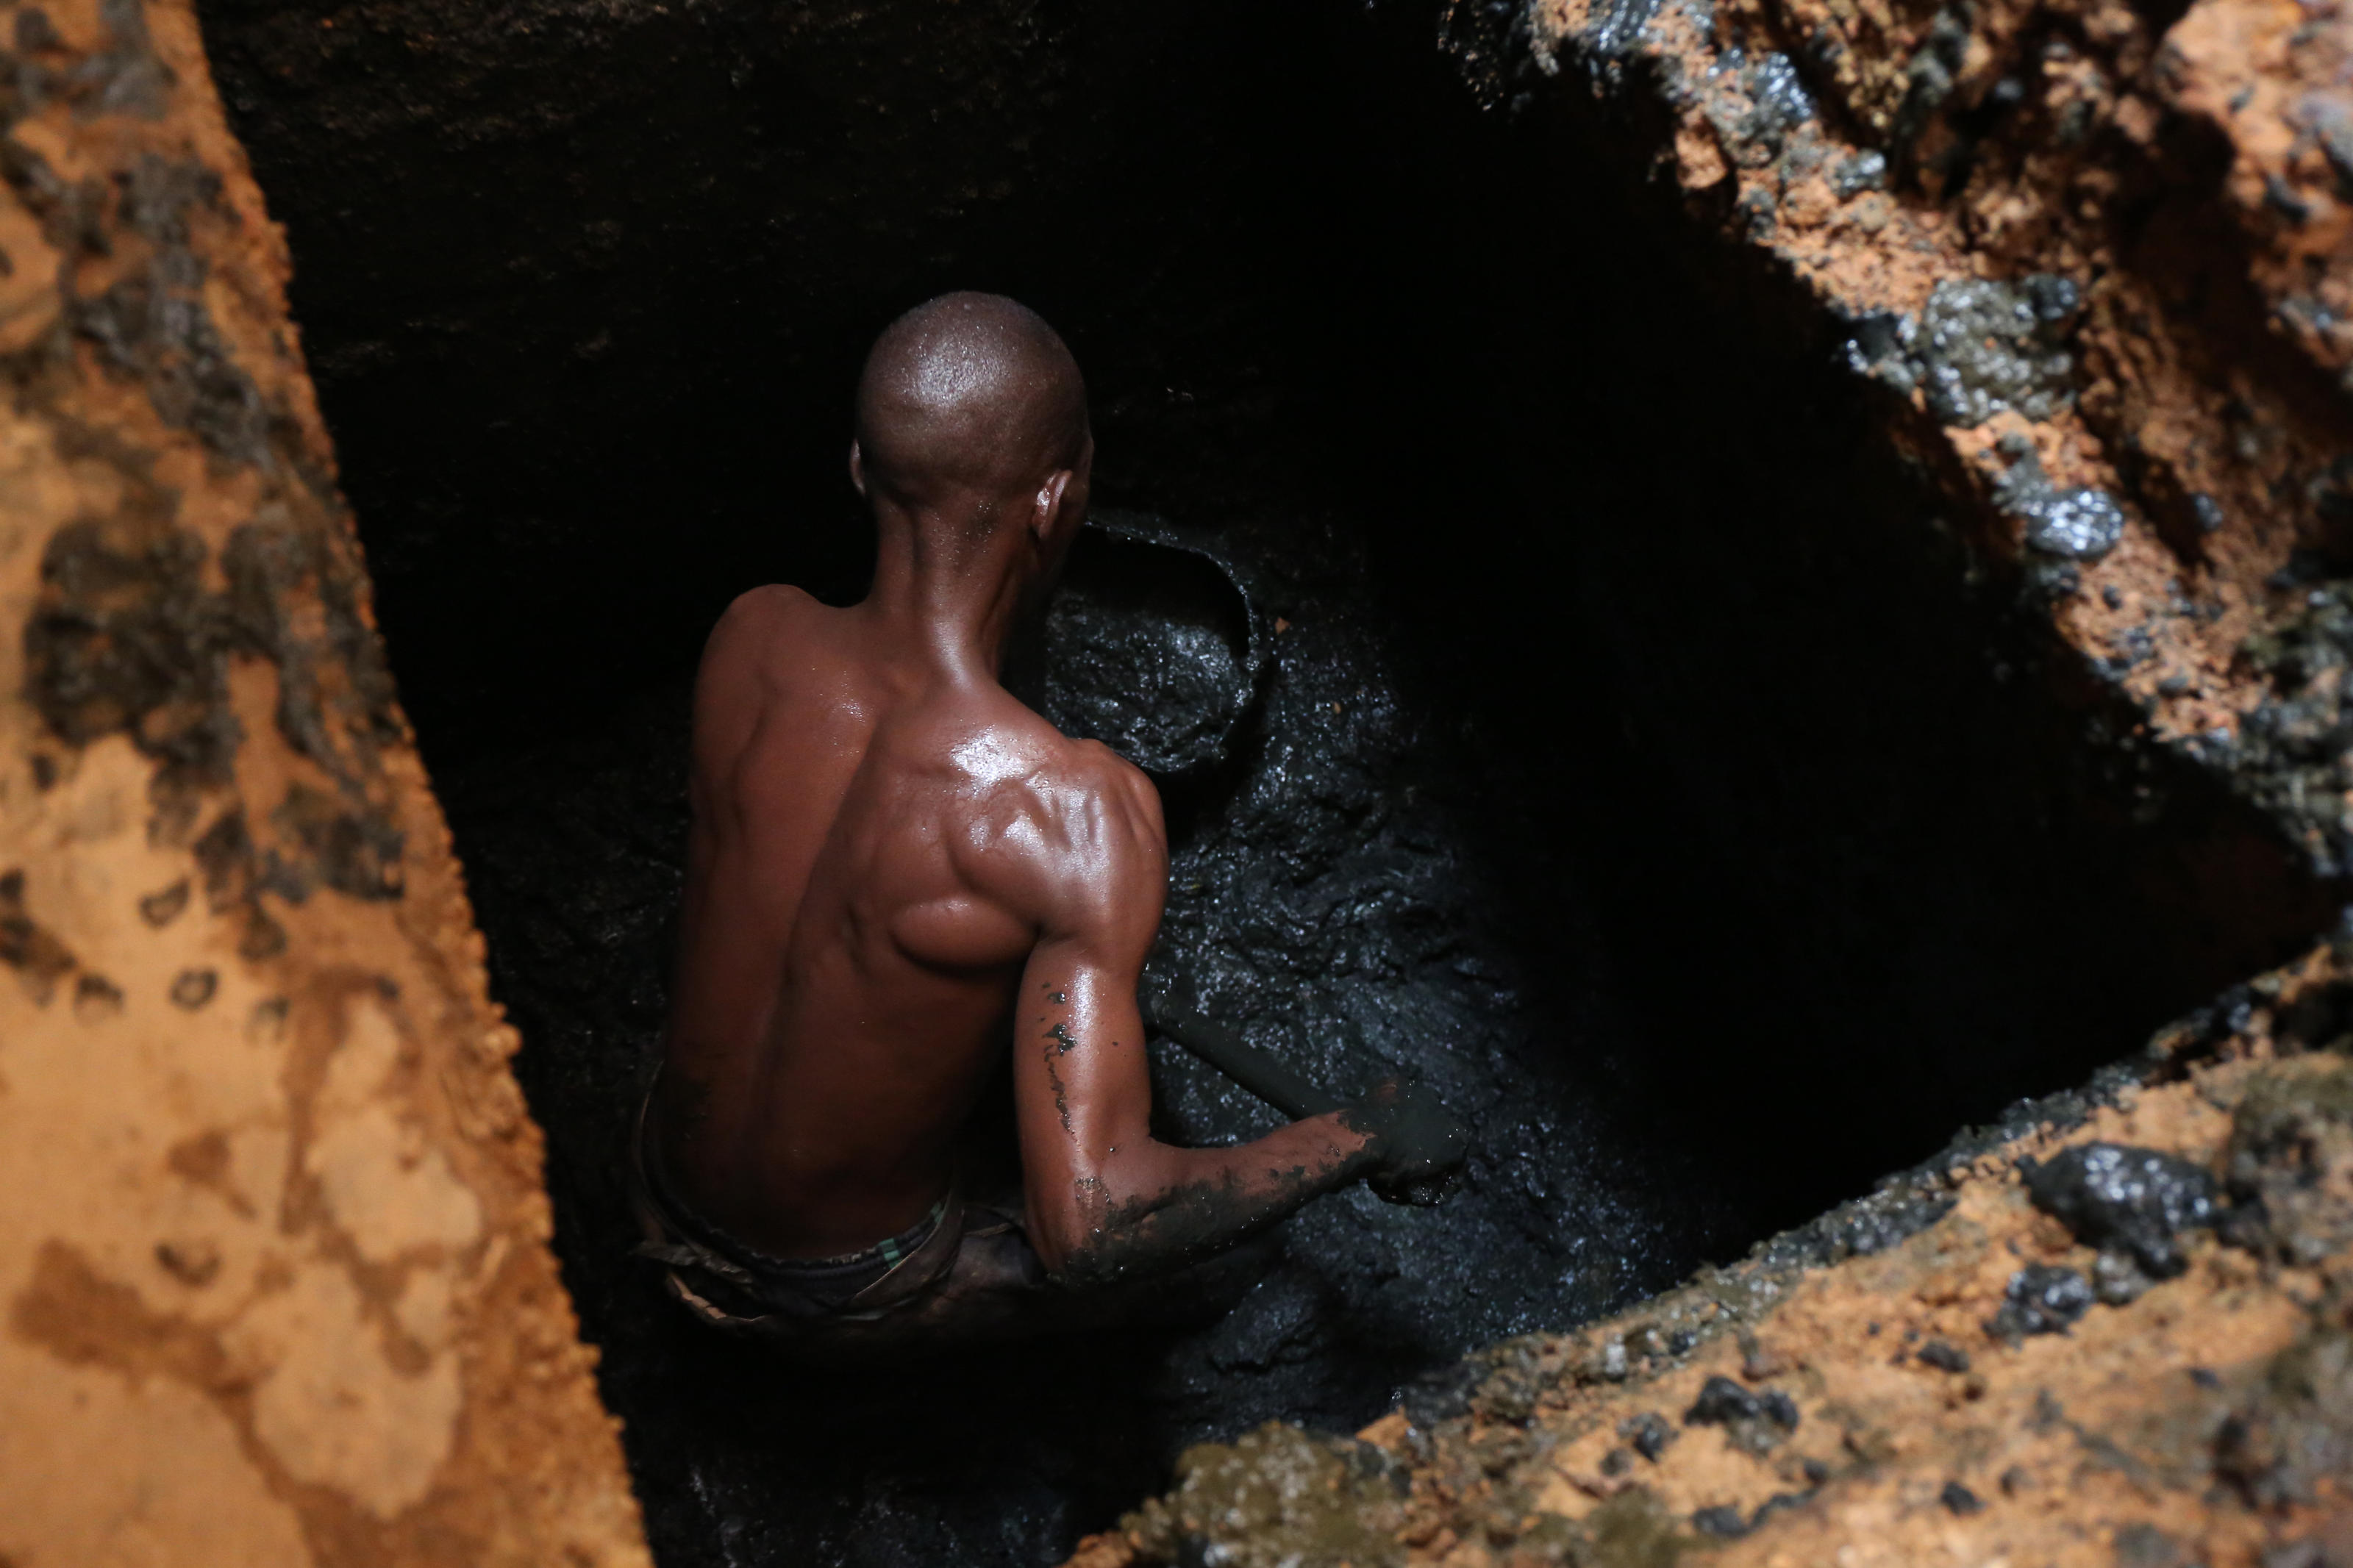 Paul Zongo, vaciador manual, dentro de un pozo, vaciando una letrina familiar en Uagadugú, Burkina Faso.